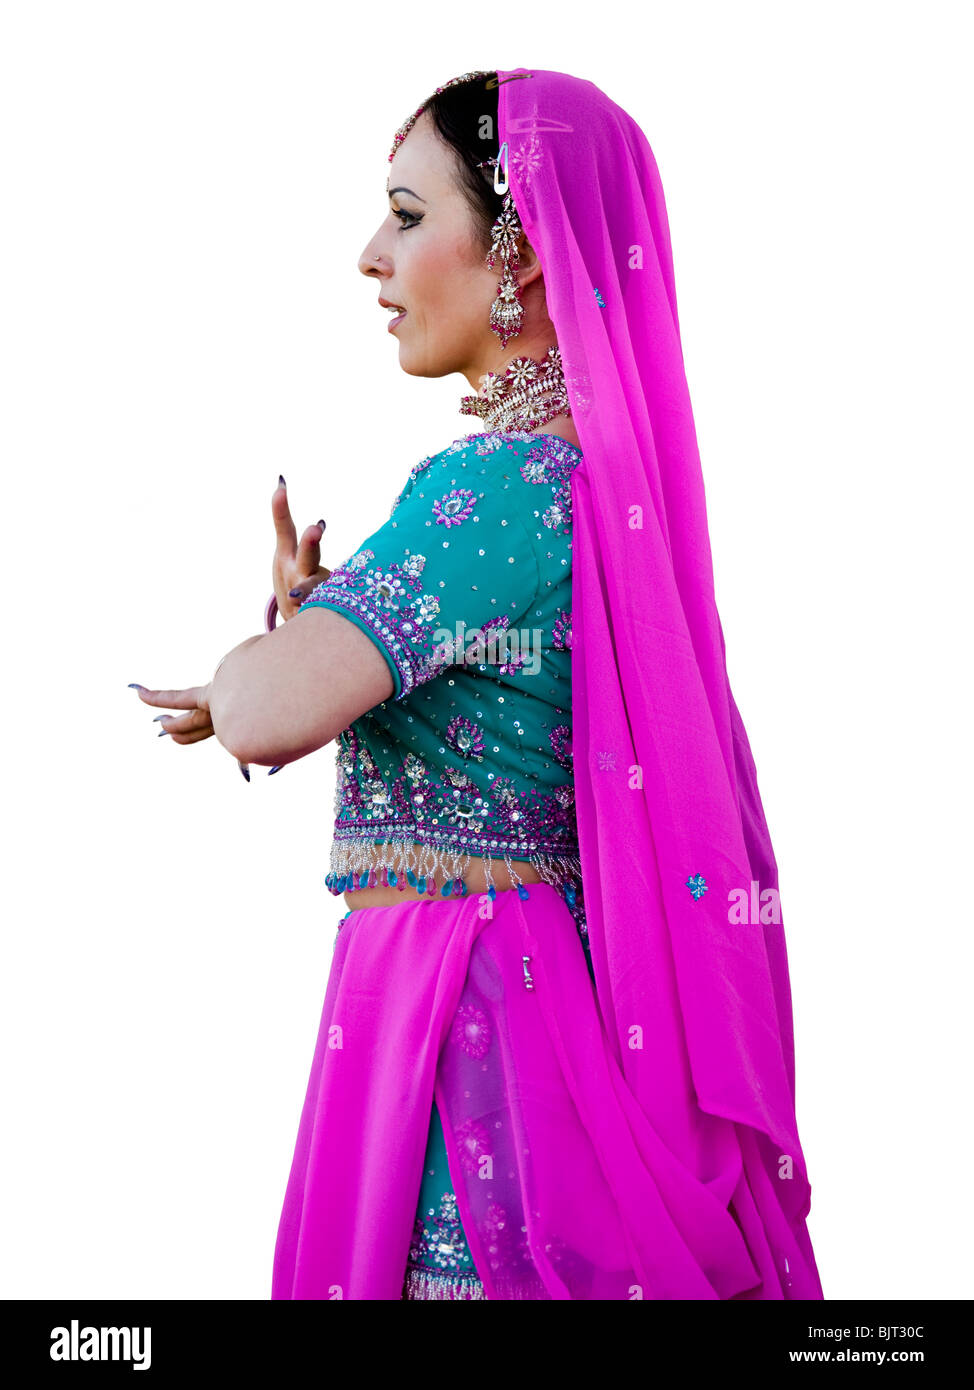 USA, Utah, Spanish Fork, Studioaufnahme Mitte erwachsenen Frau in  traditionelle indische Kleidung Stockfotografie - Alamy